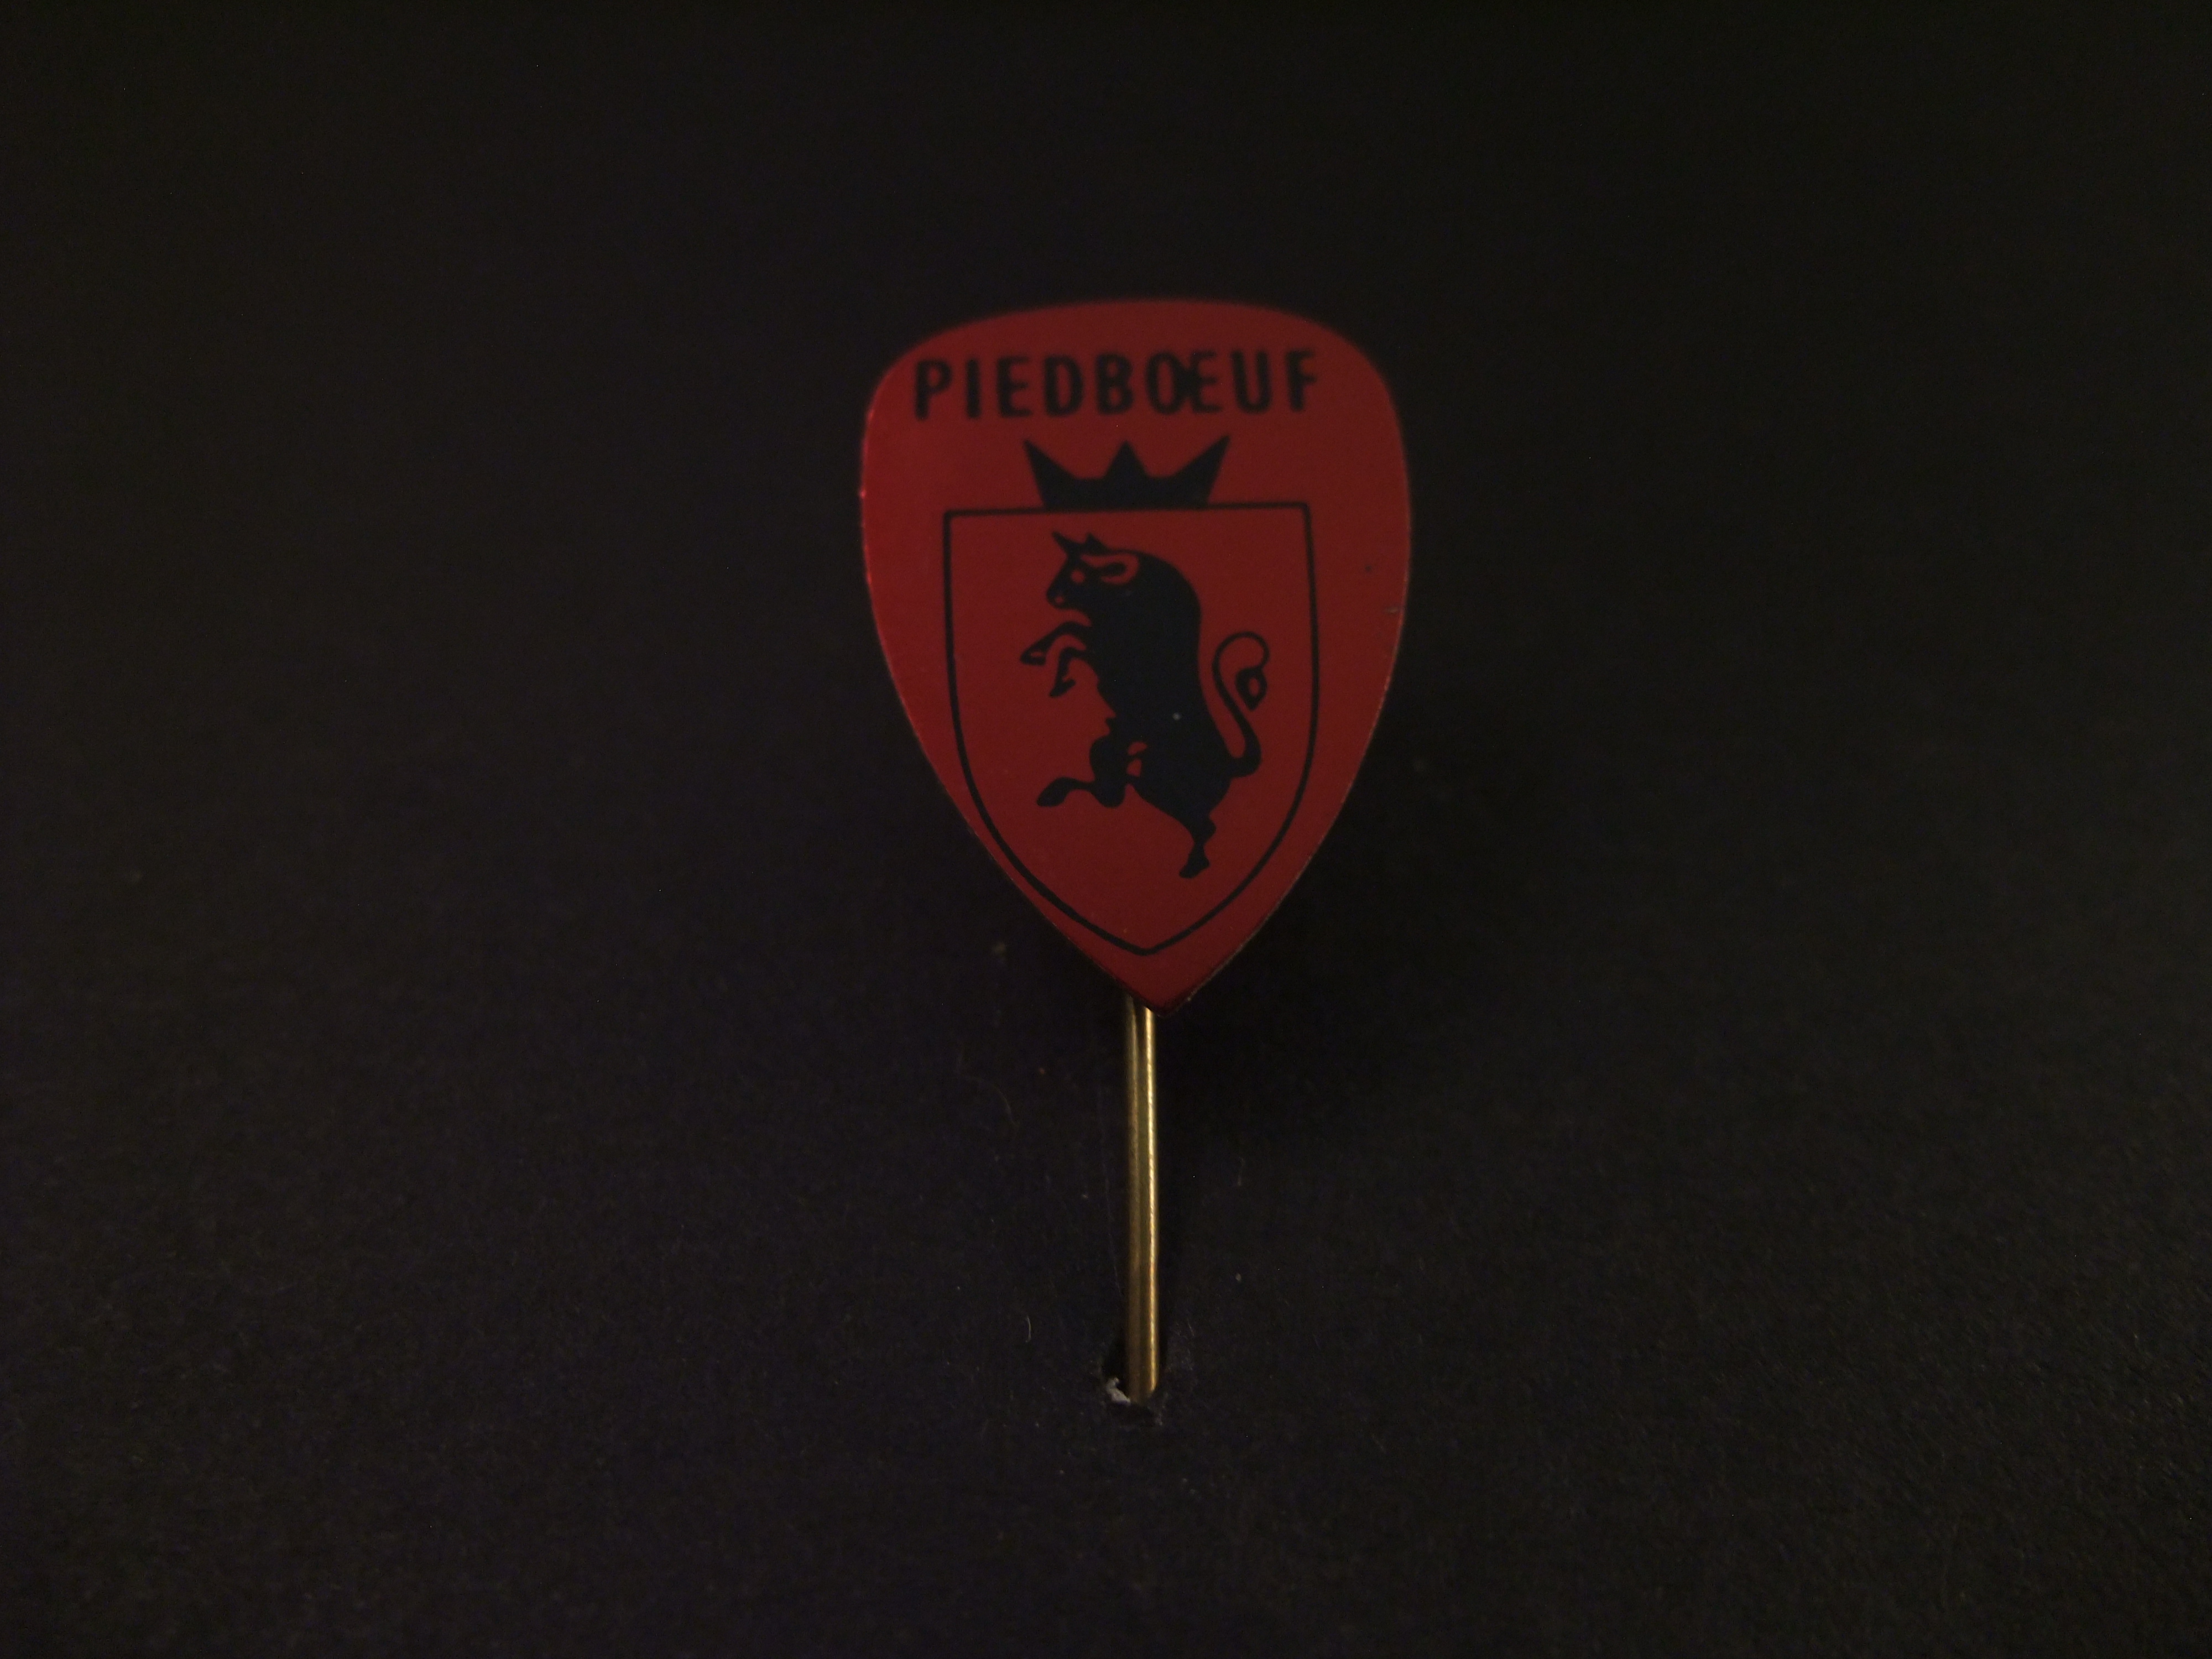 Piedboeuf Belgisch merk van tafelbieren, logo rood